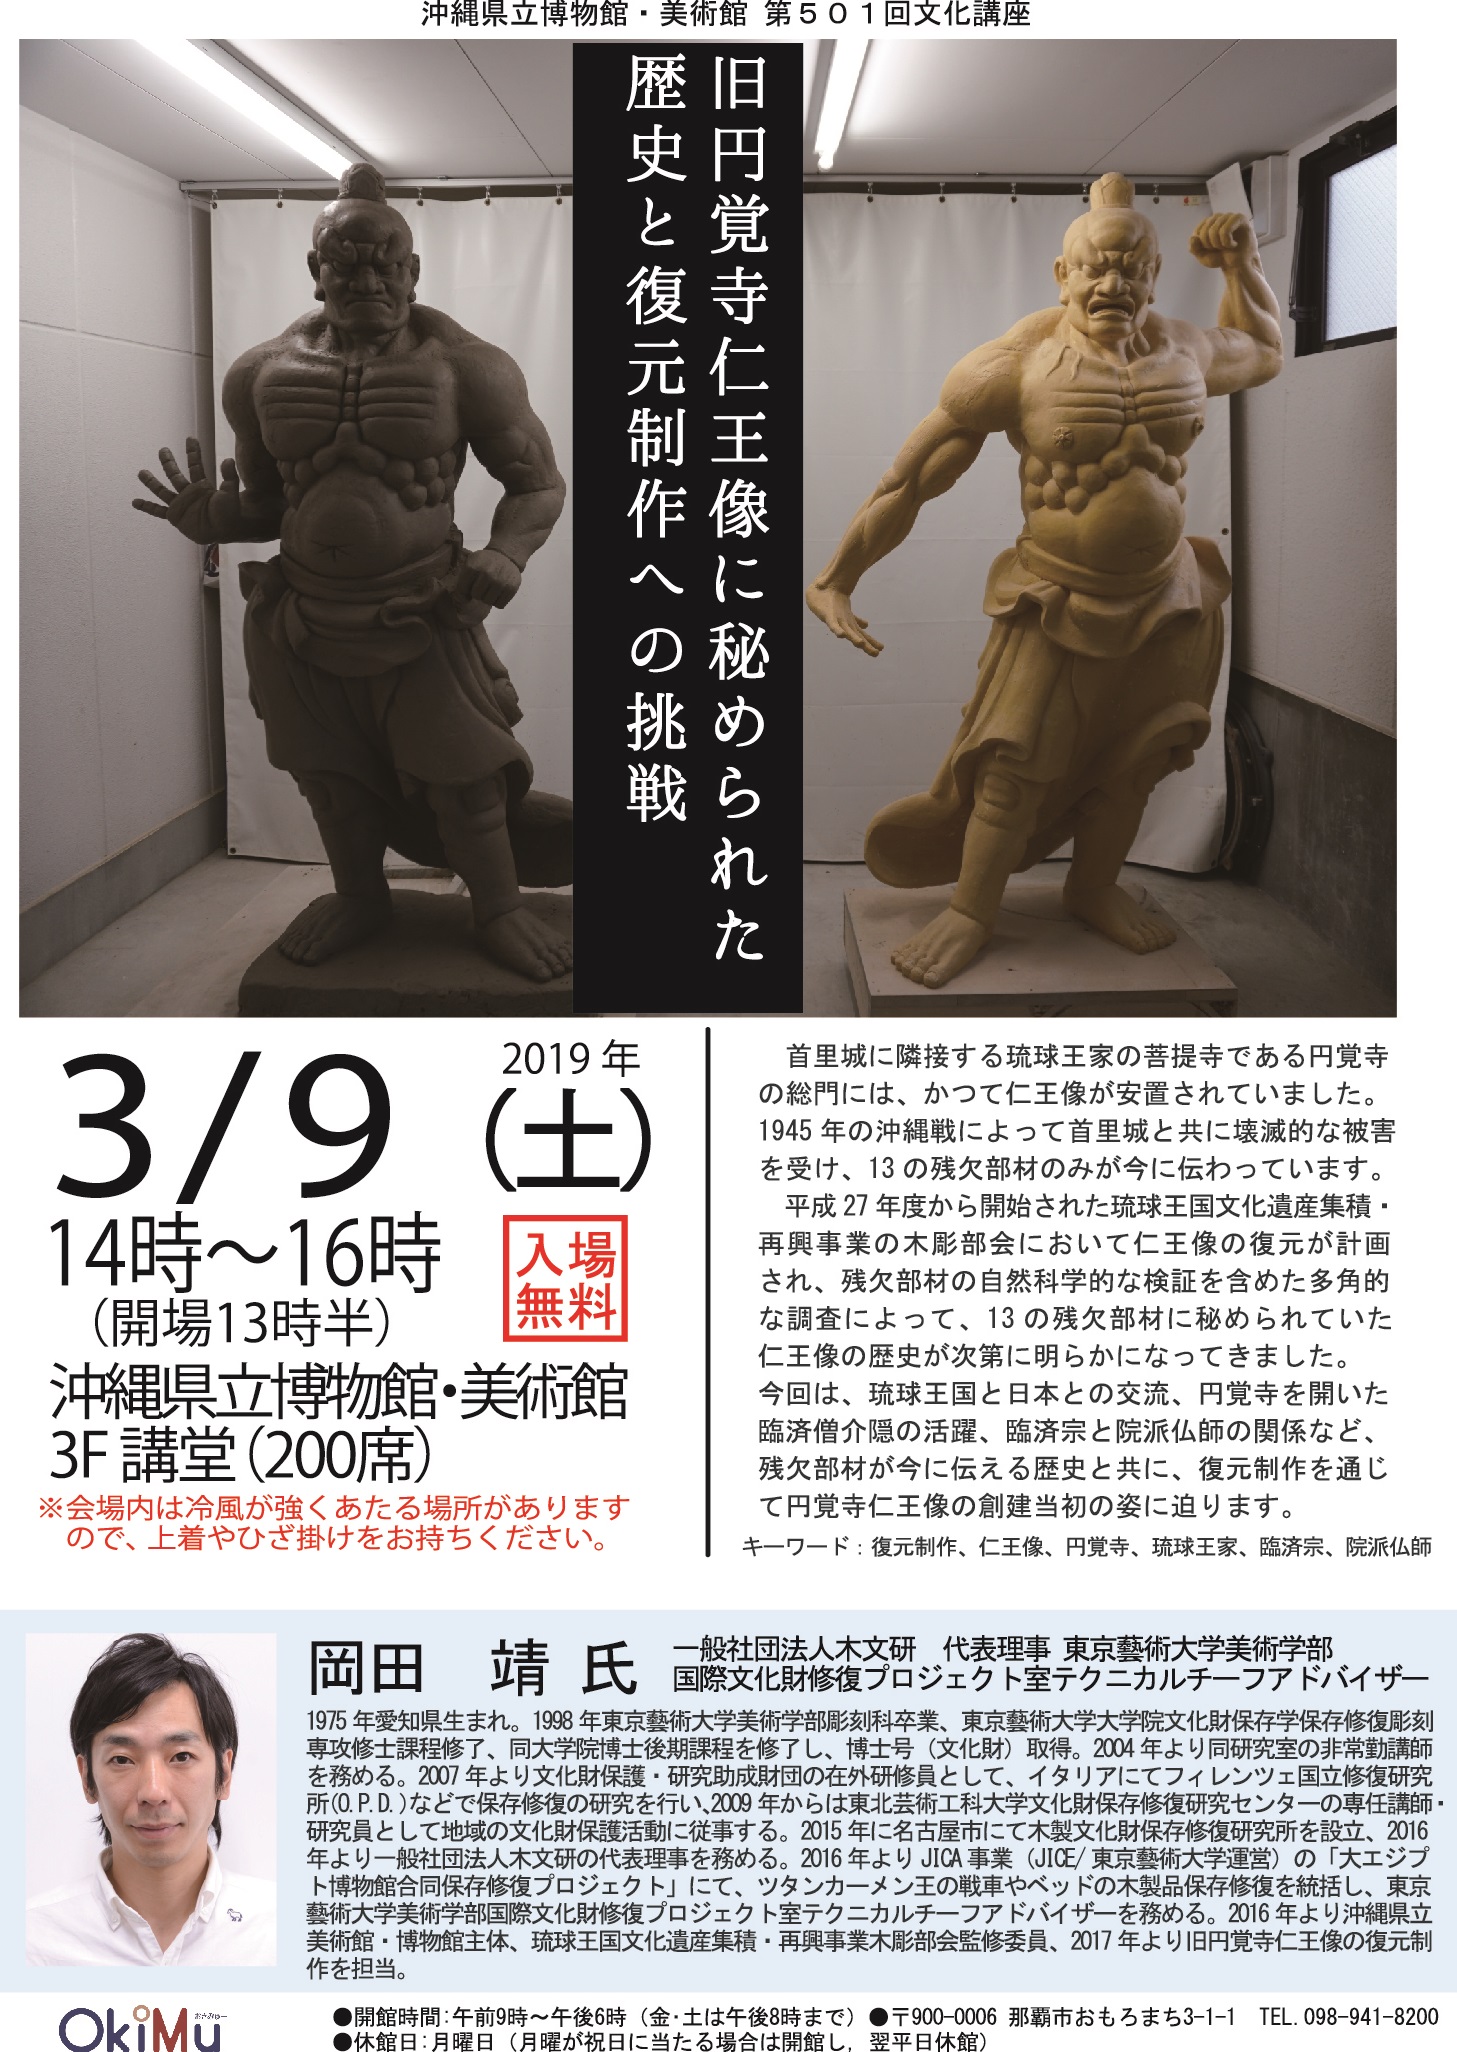 3/9（土）博物館文化講座「旧円覚寺仁王像に秘められた歴史と復元制作への挑戦」